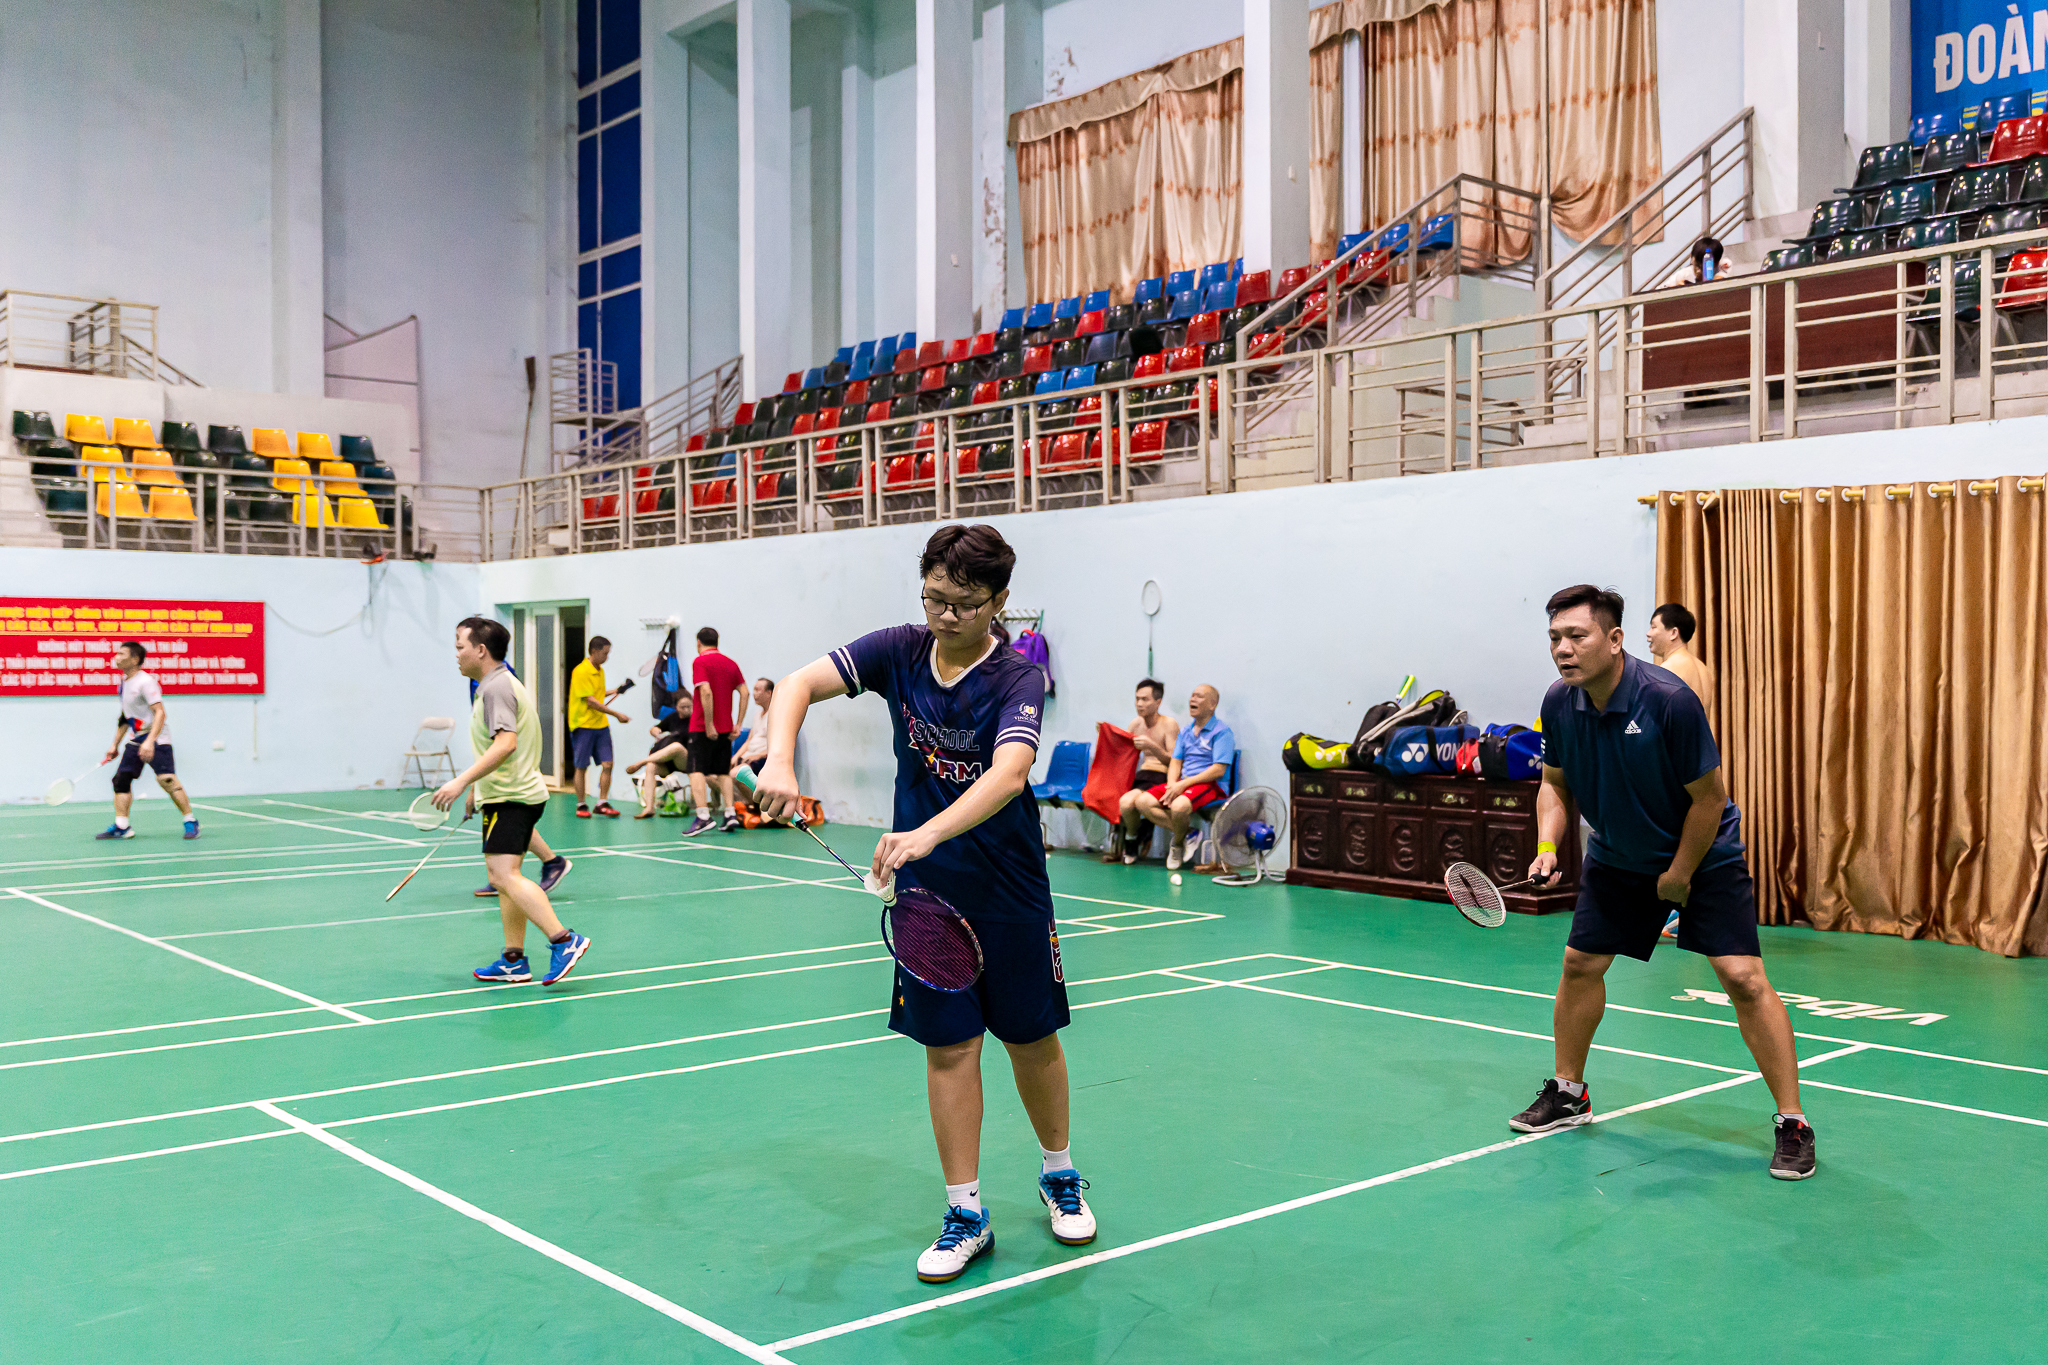 Cặp bố con tham gia giải Cầu lông Báo Thanh Hoá: “Thể thao là cầu nối gắn kết gia đình”